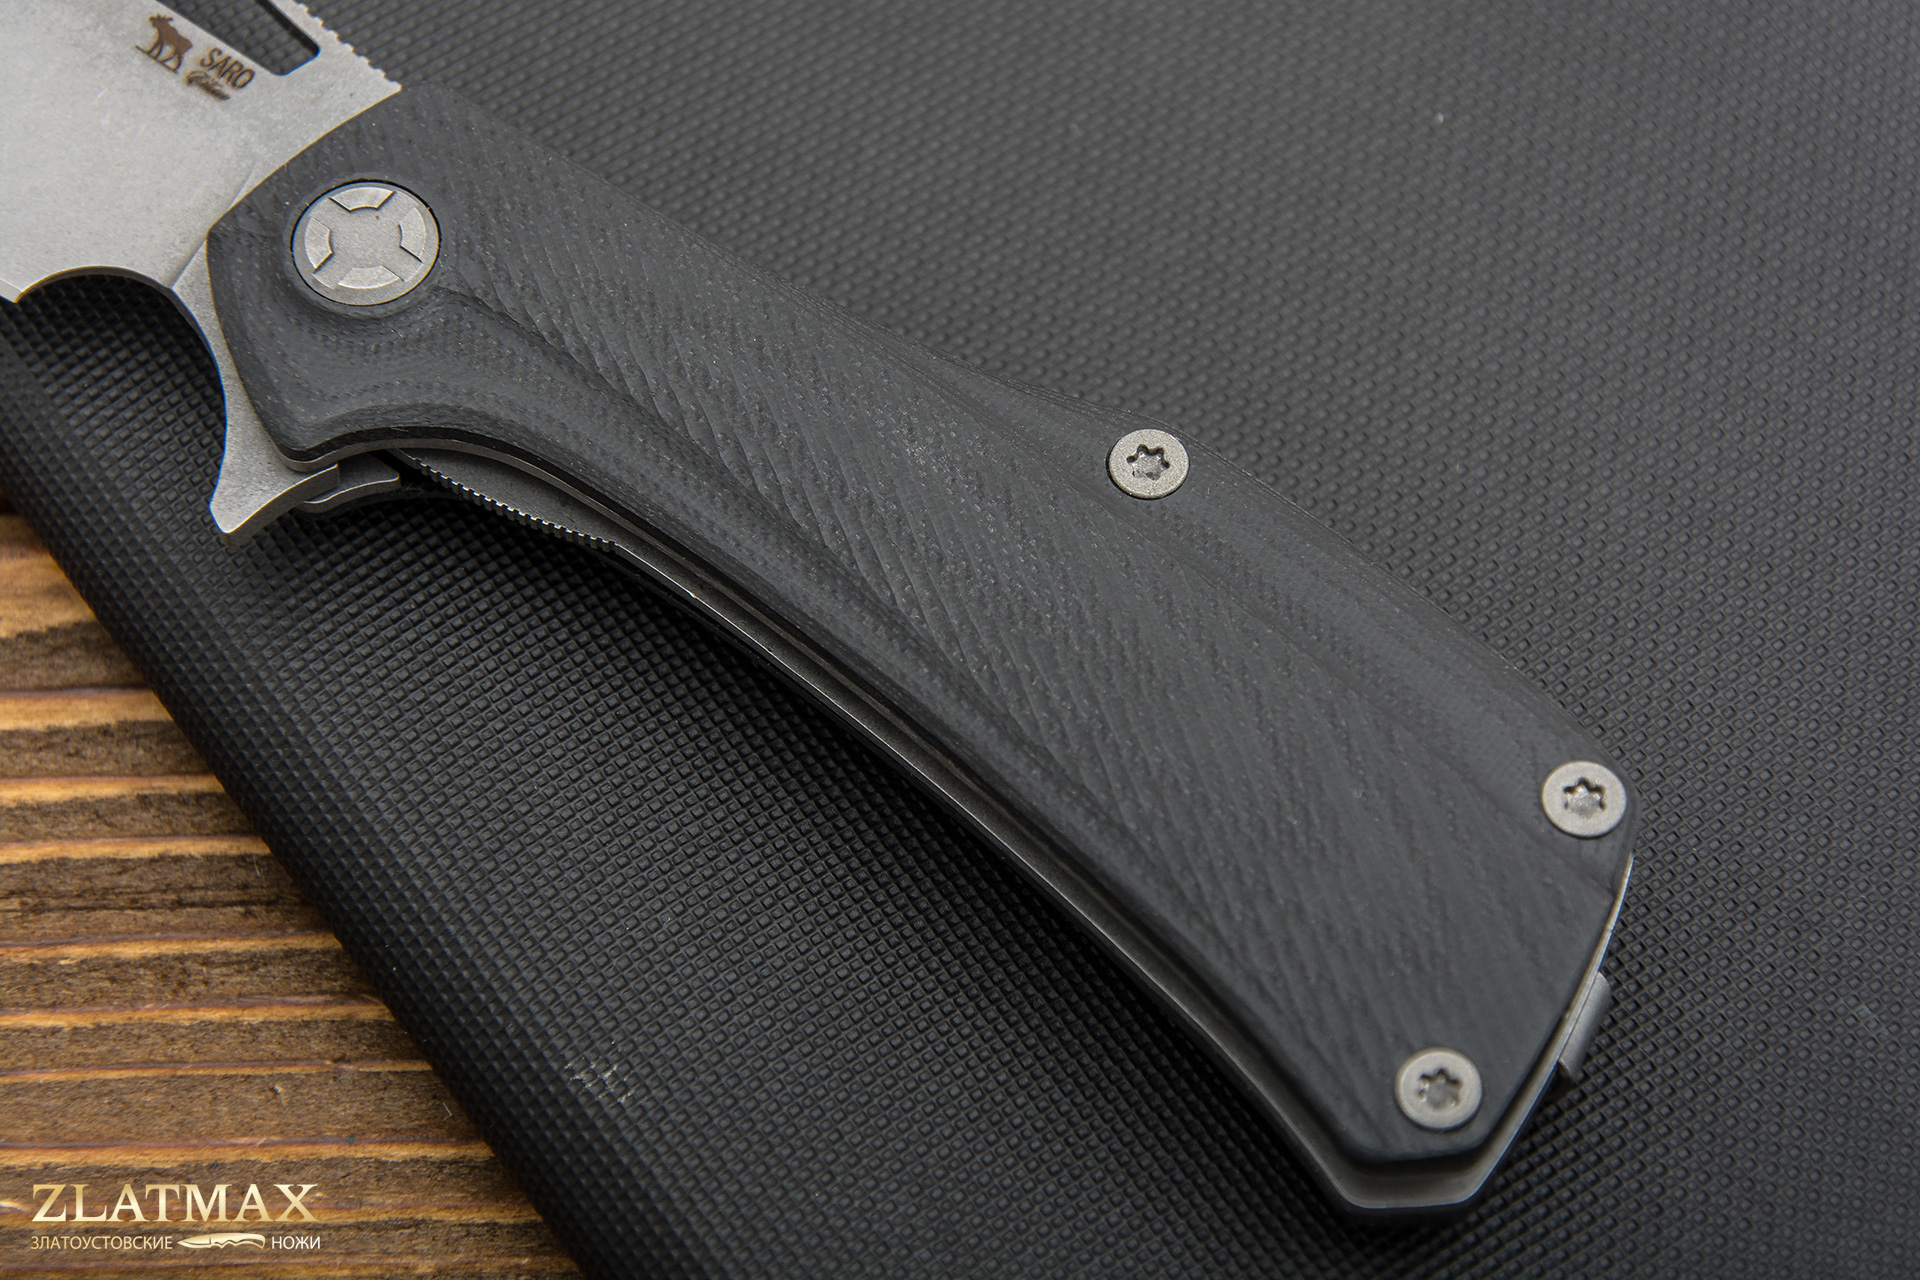 Нож Складной Скорпион EVO BOWIE (K110 Böhler, Накладки G10 Черный, Обработка клинка Stonewash)